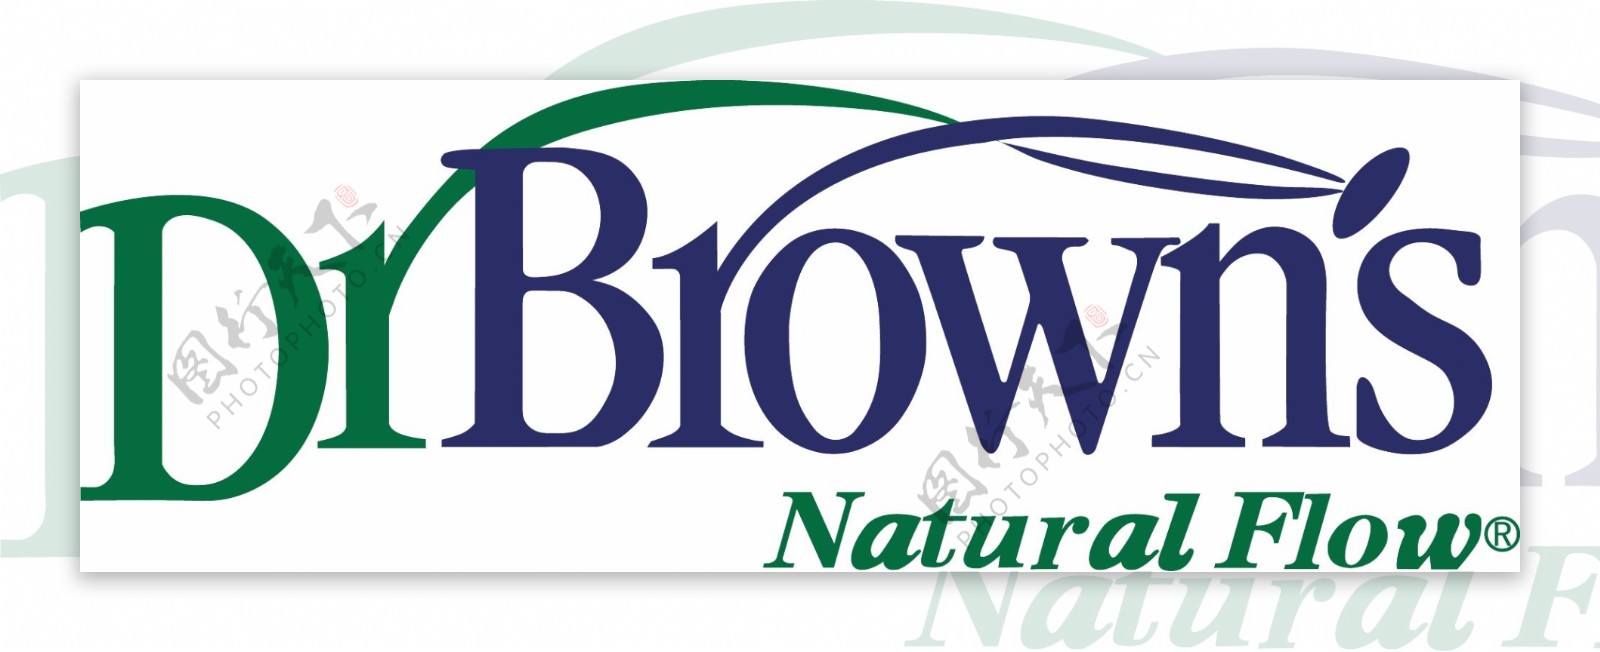 布朗博士矢量logo图片